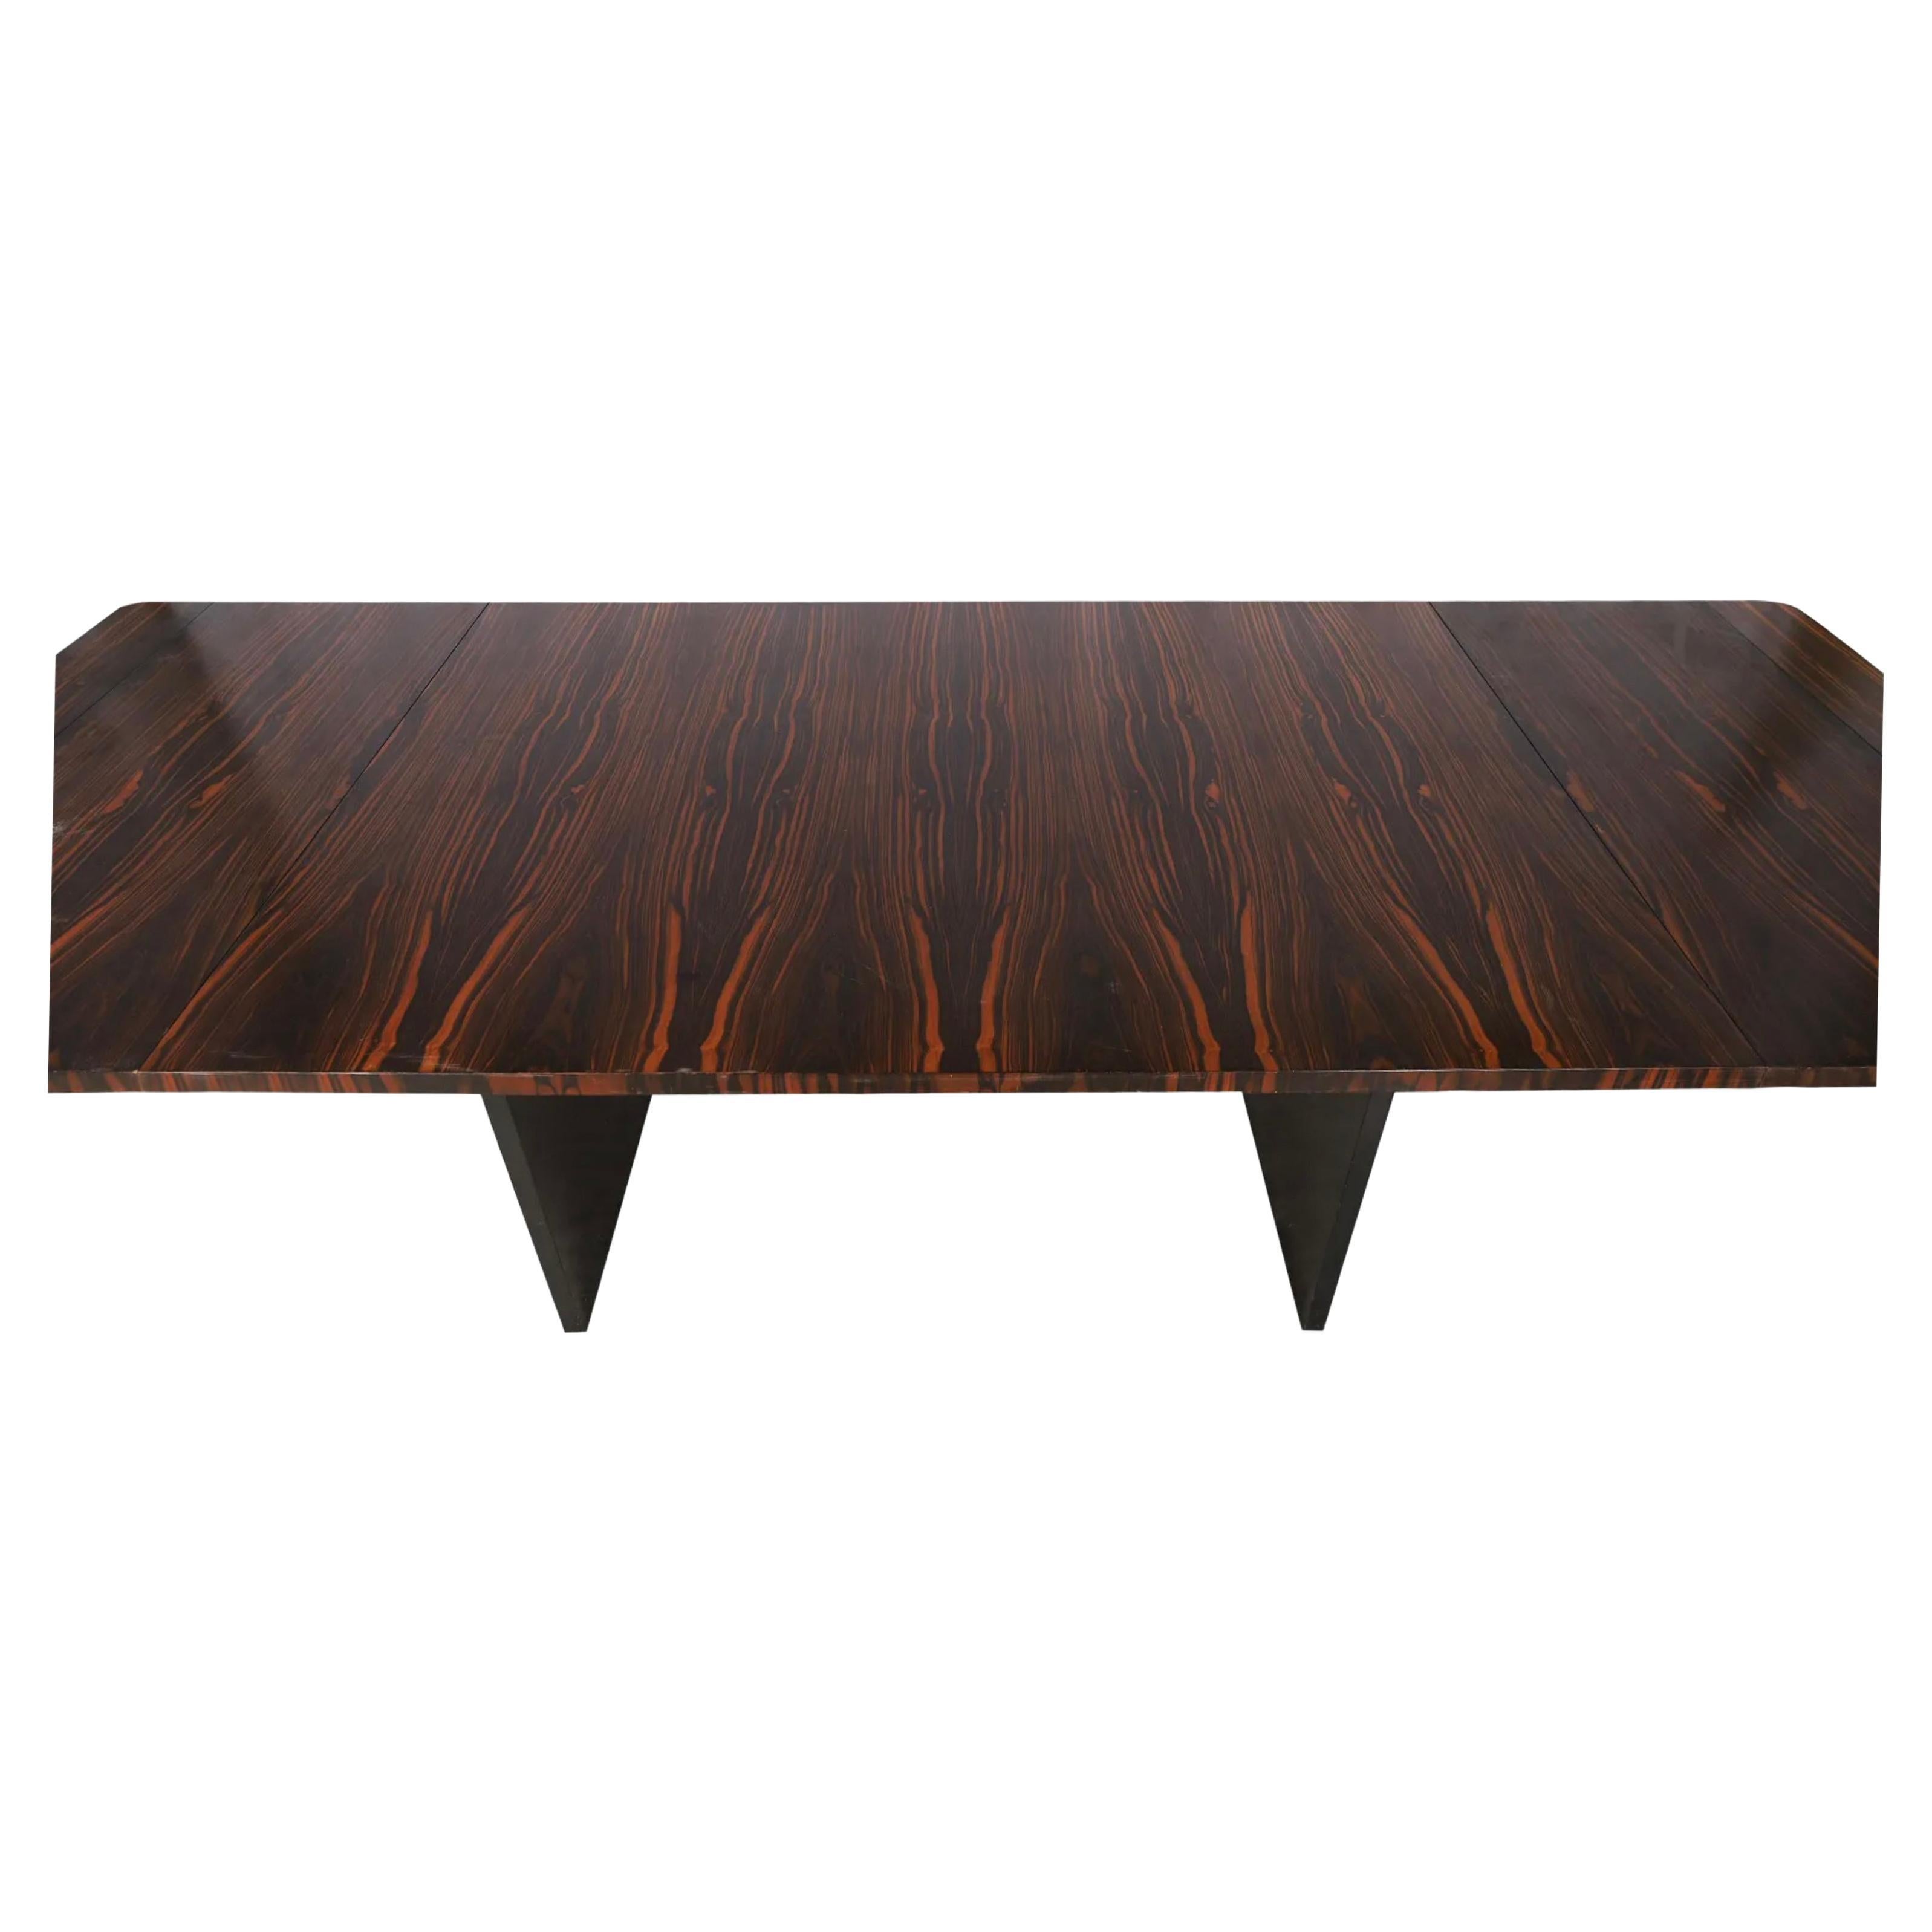 Atemberaubende Mid Century brasilianischen Palisander Rectangle Modern Erweiterung Esstisch mit (2) Blätter. Dieser Tisch hat schwarze Holzbeine mit verchromten Läufern. Diese Tabelle ist in schönem Zustand mit schwarz, dunkelbraun und rötlich